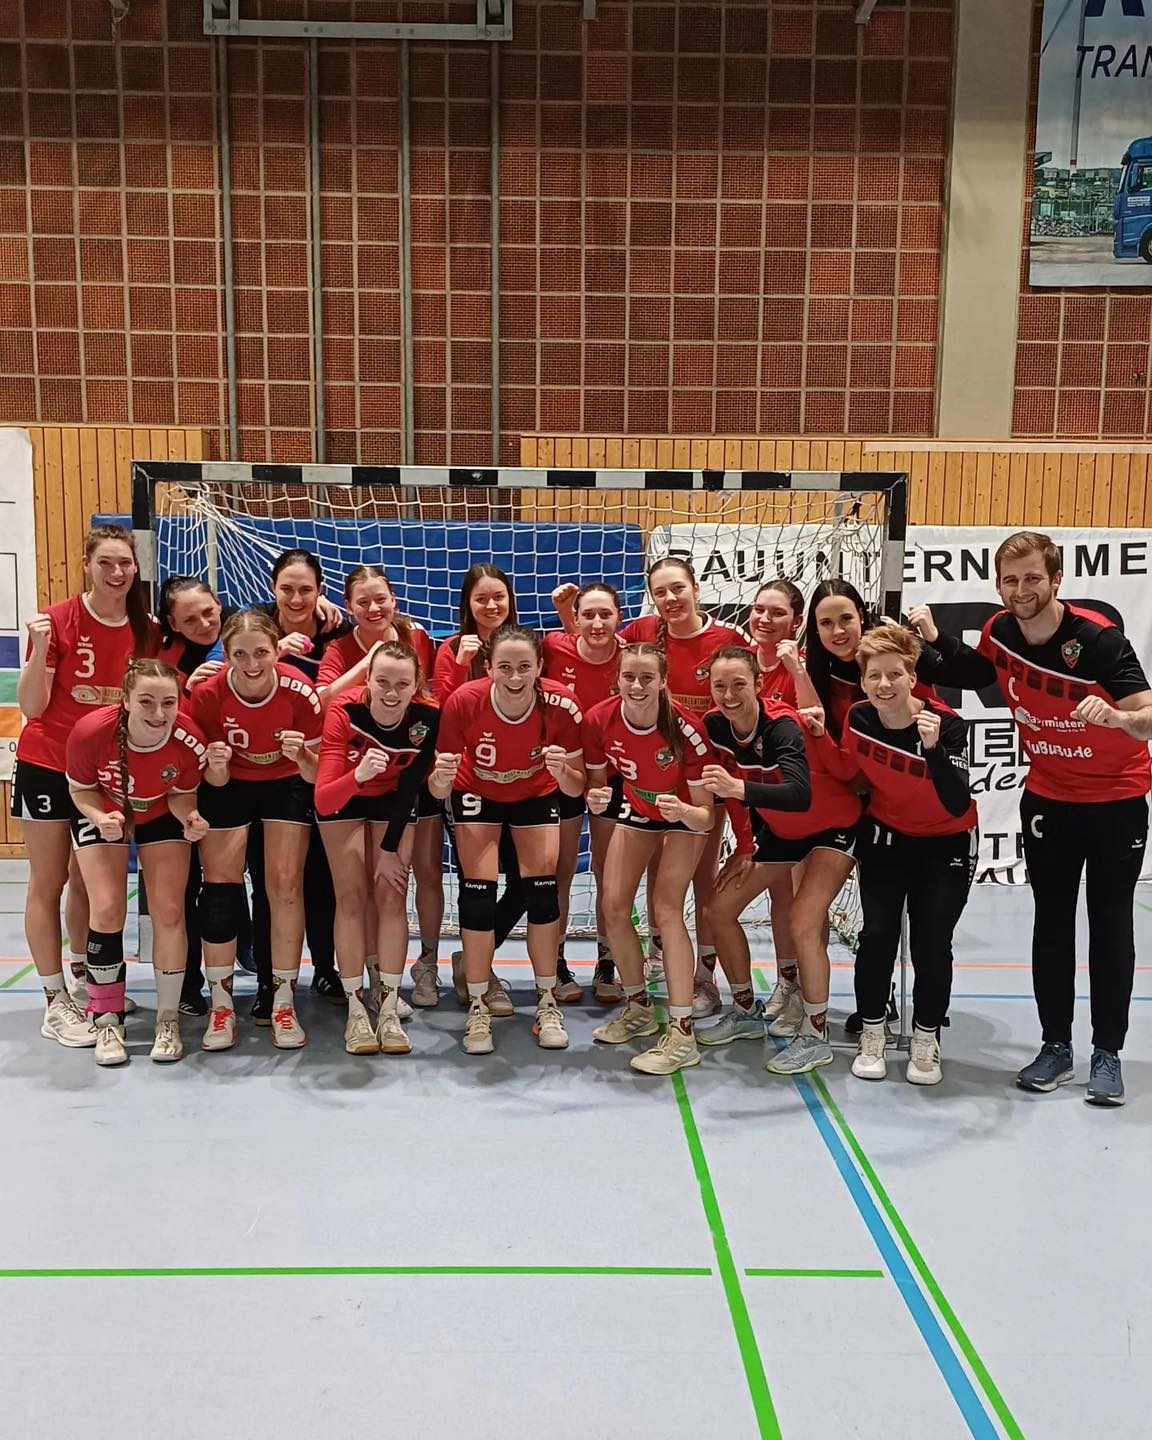 Damen 1 gewinnen deutlich (34-18) gegen die HSG Obere Nahe!